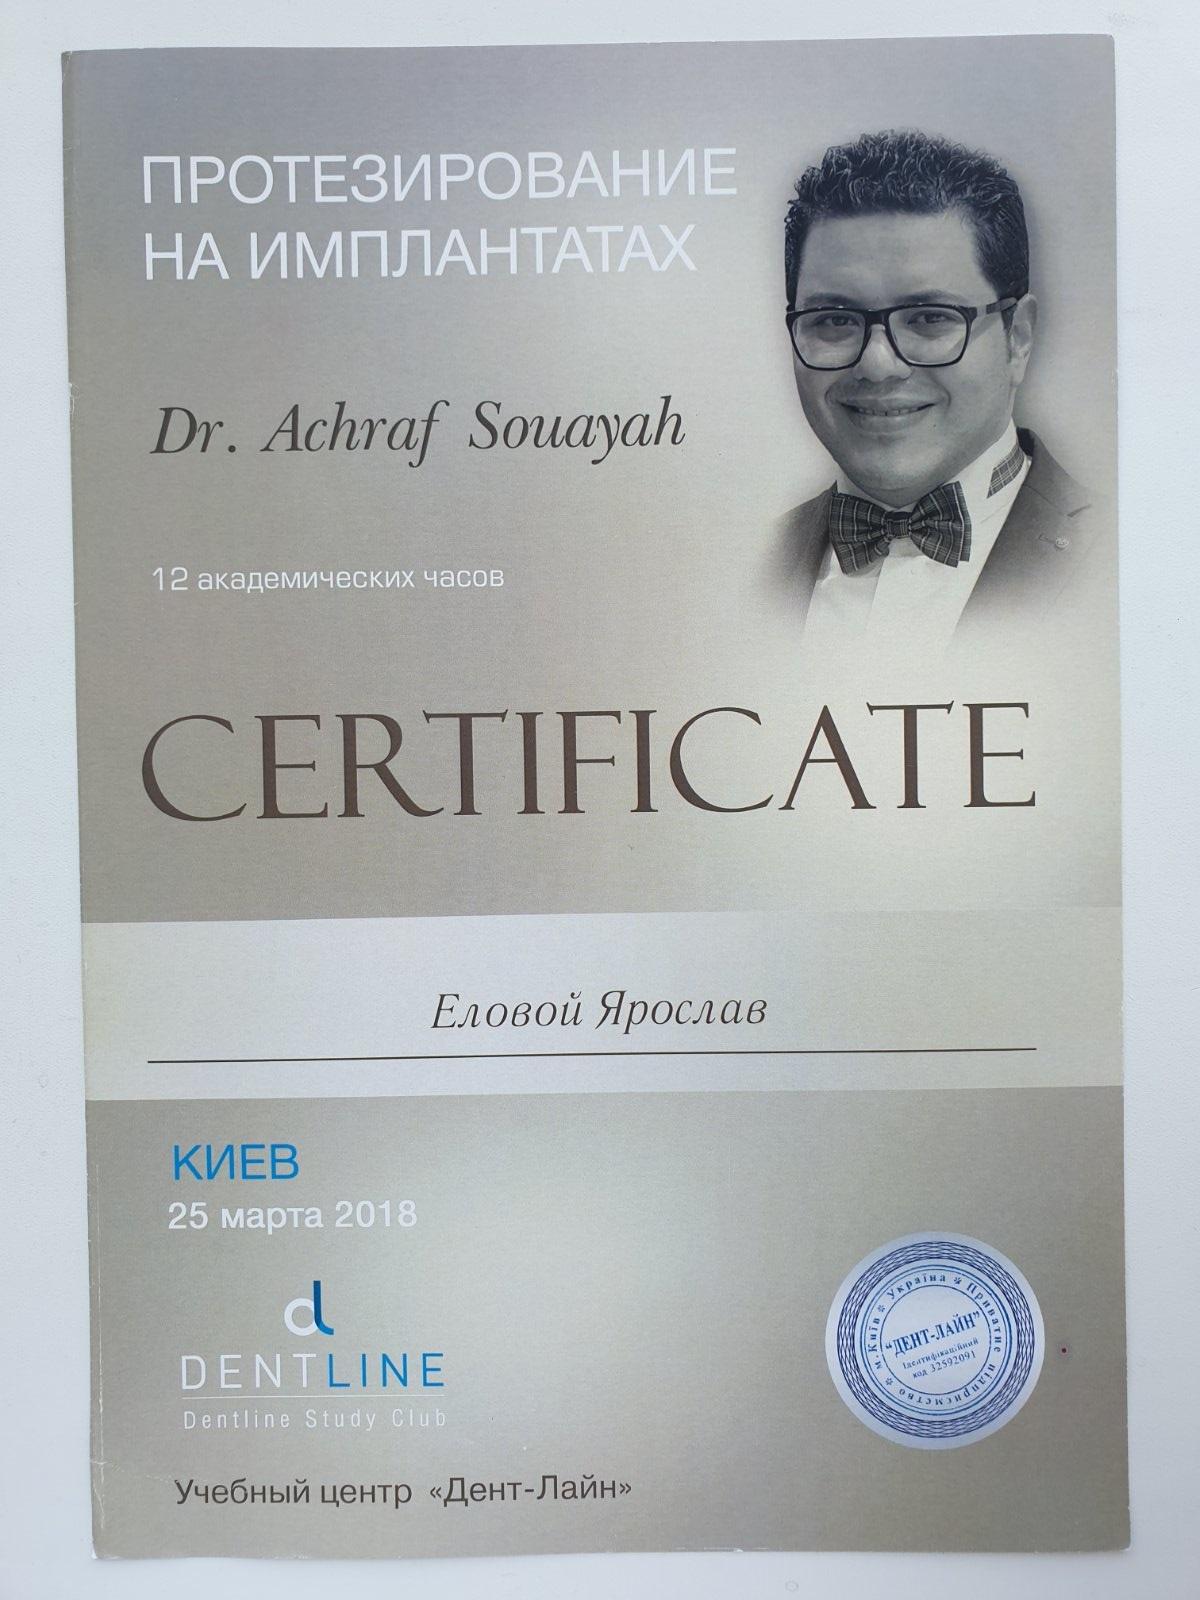 Сертификат выданный Еловому Ярославу о прохождении курса Доктора Achraf Souayah Протезирование на имплантатах